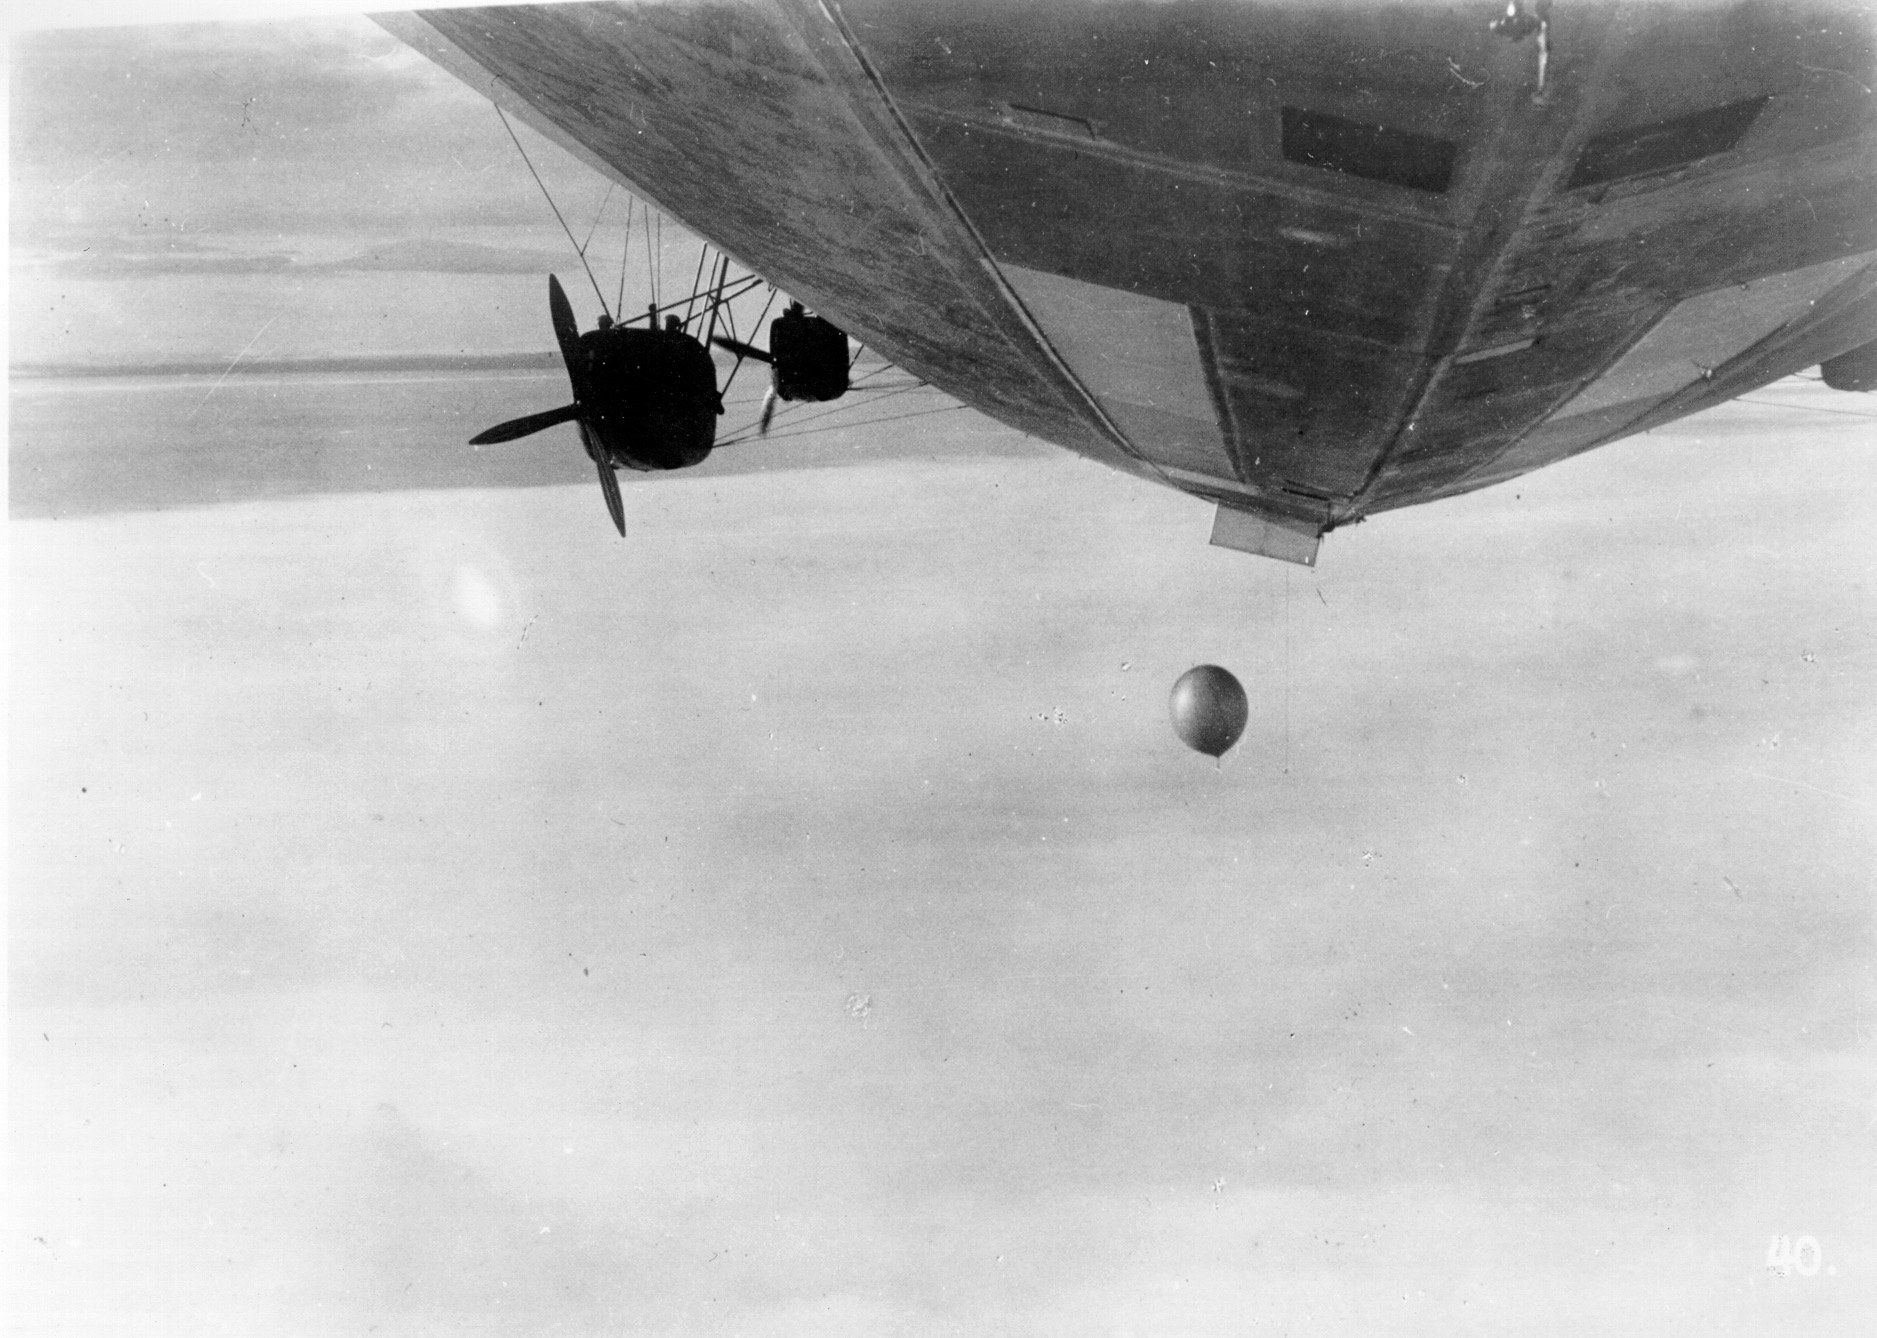 Absetzen eines Forschungsballons während der Arktisfahrt (Zeppelin Museum Friedrichshafen GmbH CC BY-NC-SA)